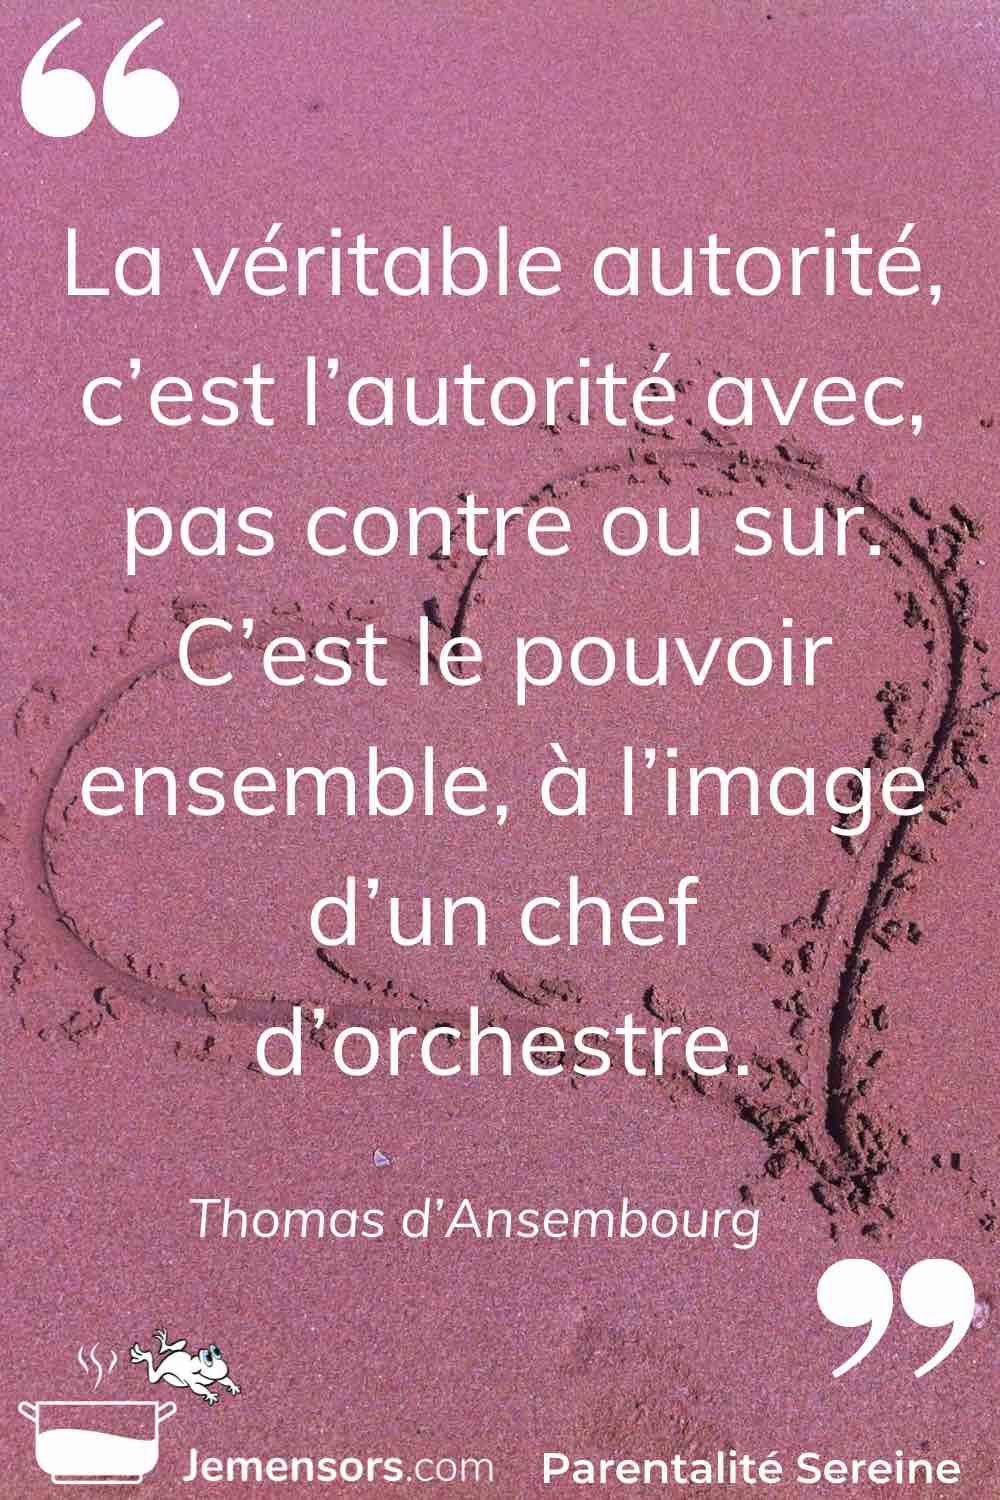 “La véritable autorité, c’est l’autorité avec, pas contre ou sur. C’est le pouvoir ensemble, à l’image d’un chef d’orchestre.” Thomas d’Ansembourg